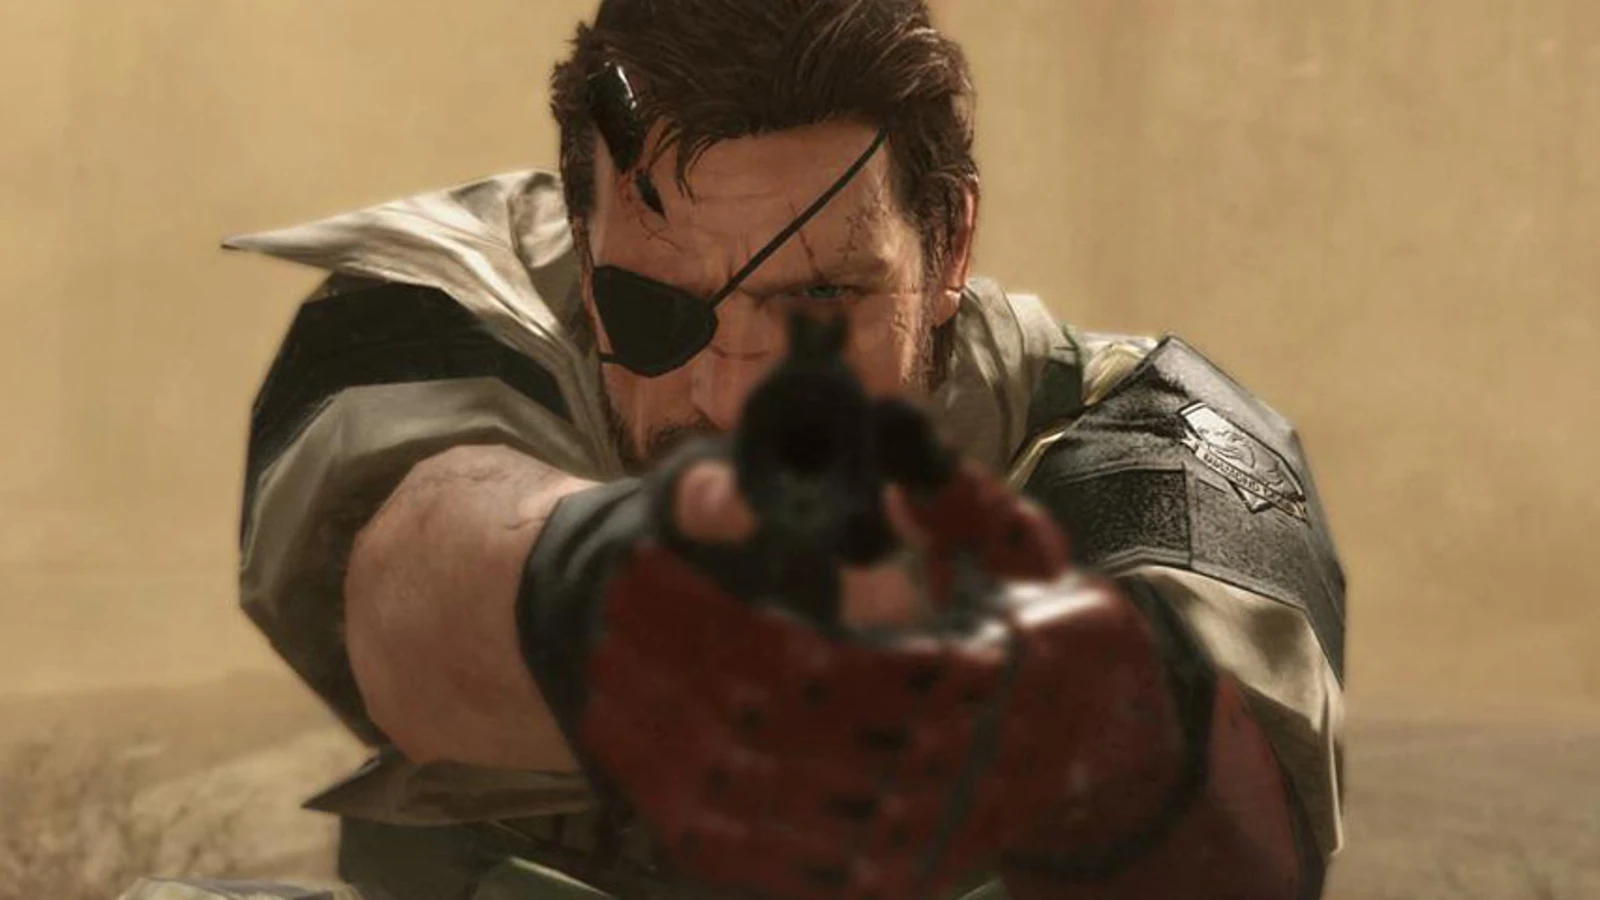 A still from Metal Gear Solid V: The Phantom Pain